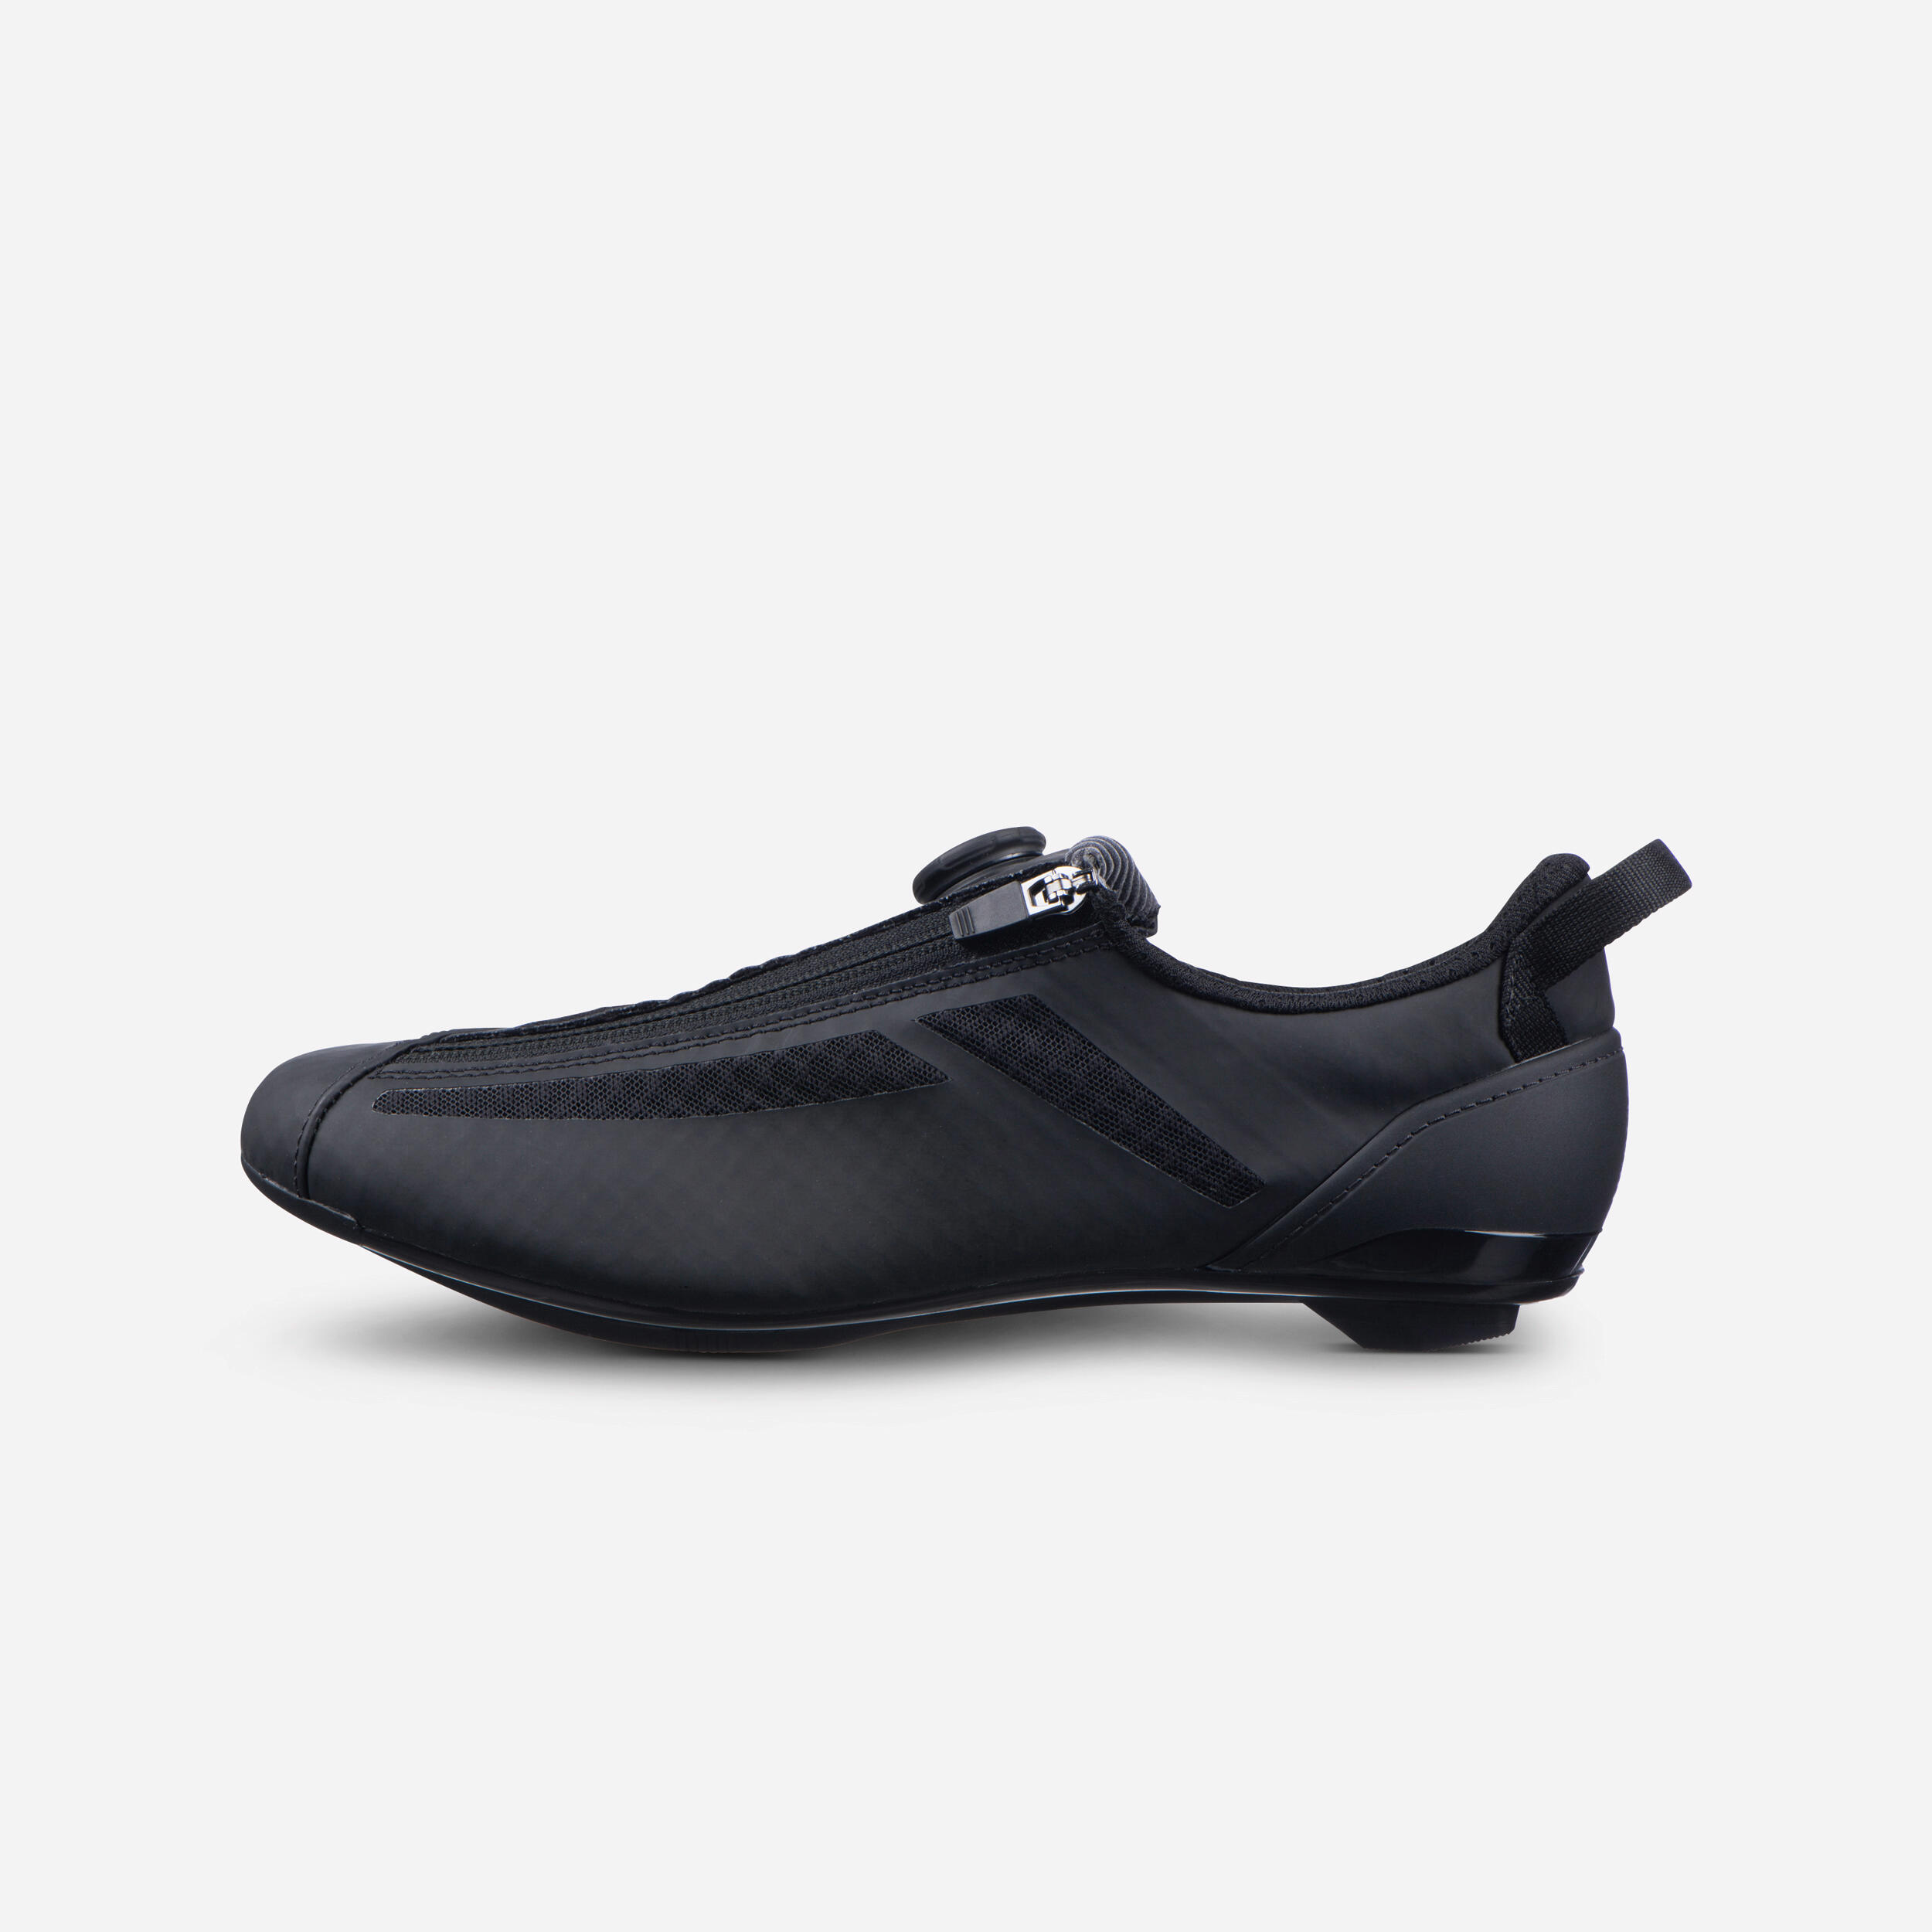 Aptonia Triathlon Cycling Shoes - Black 1/7